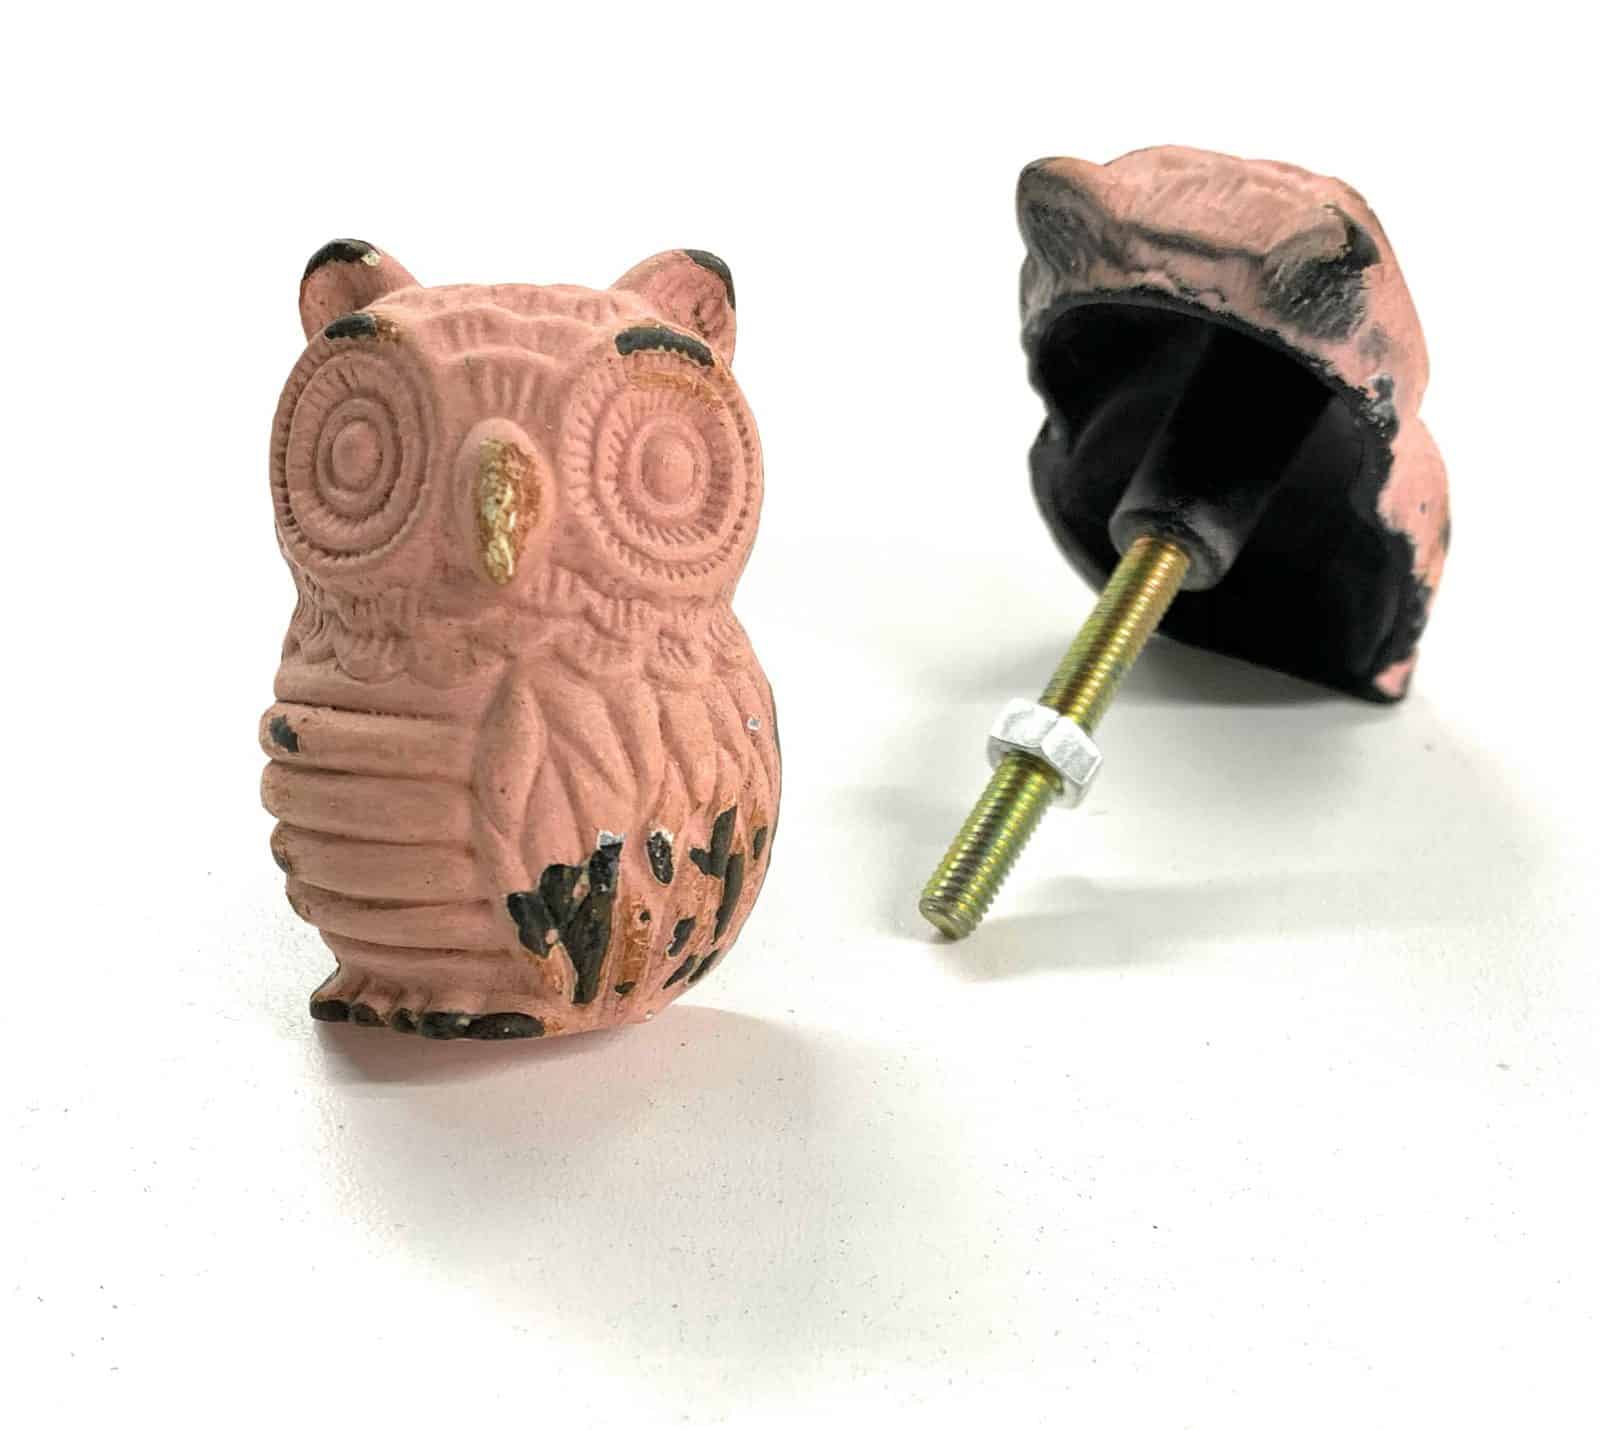 Pink Owl Knob - Knob012 (Pack of 2) | Poignée Hibou rose knob012 (Paquet de 2)